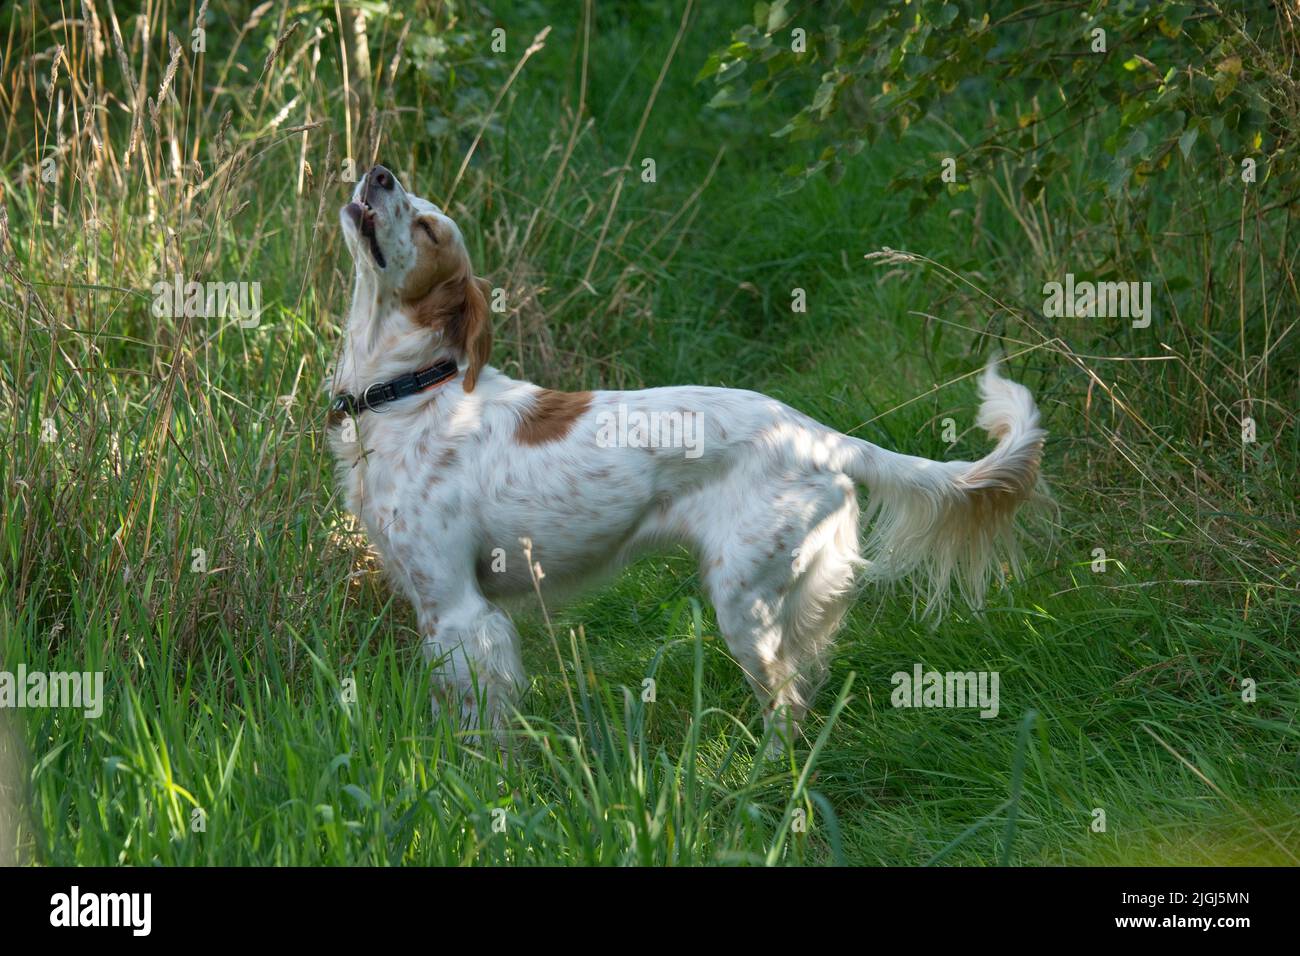 Perro setter inglés parado con la nariz levantada y la boca levemente cogiendo un olor en bosque ligero, Berkshire, agosto Foto de stock